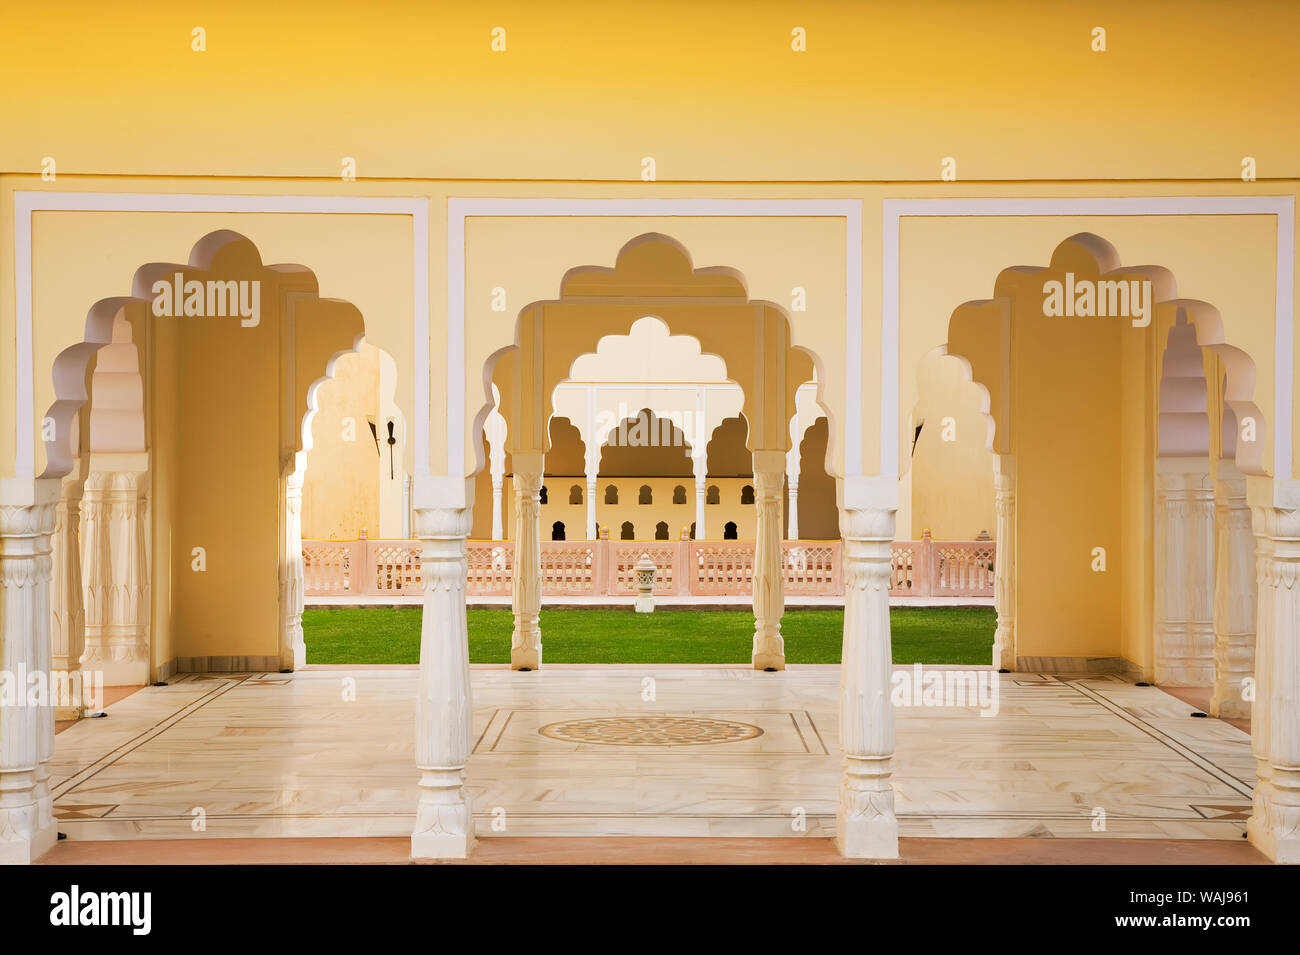 India Rajasthan. Interno dell edificio con molti archi. Credito come: Jim Nilsen Jaynes / Galleria / DanitaDelimont.com Foto Stock